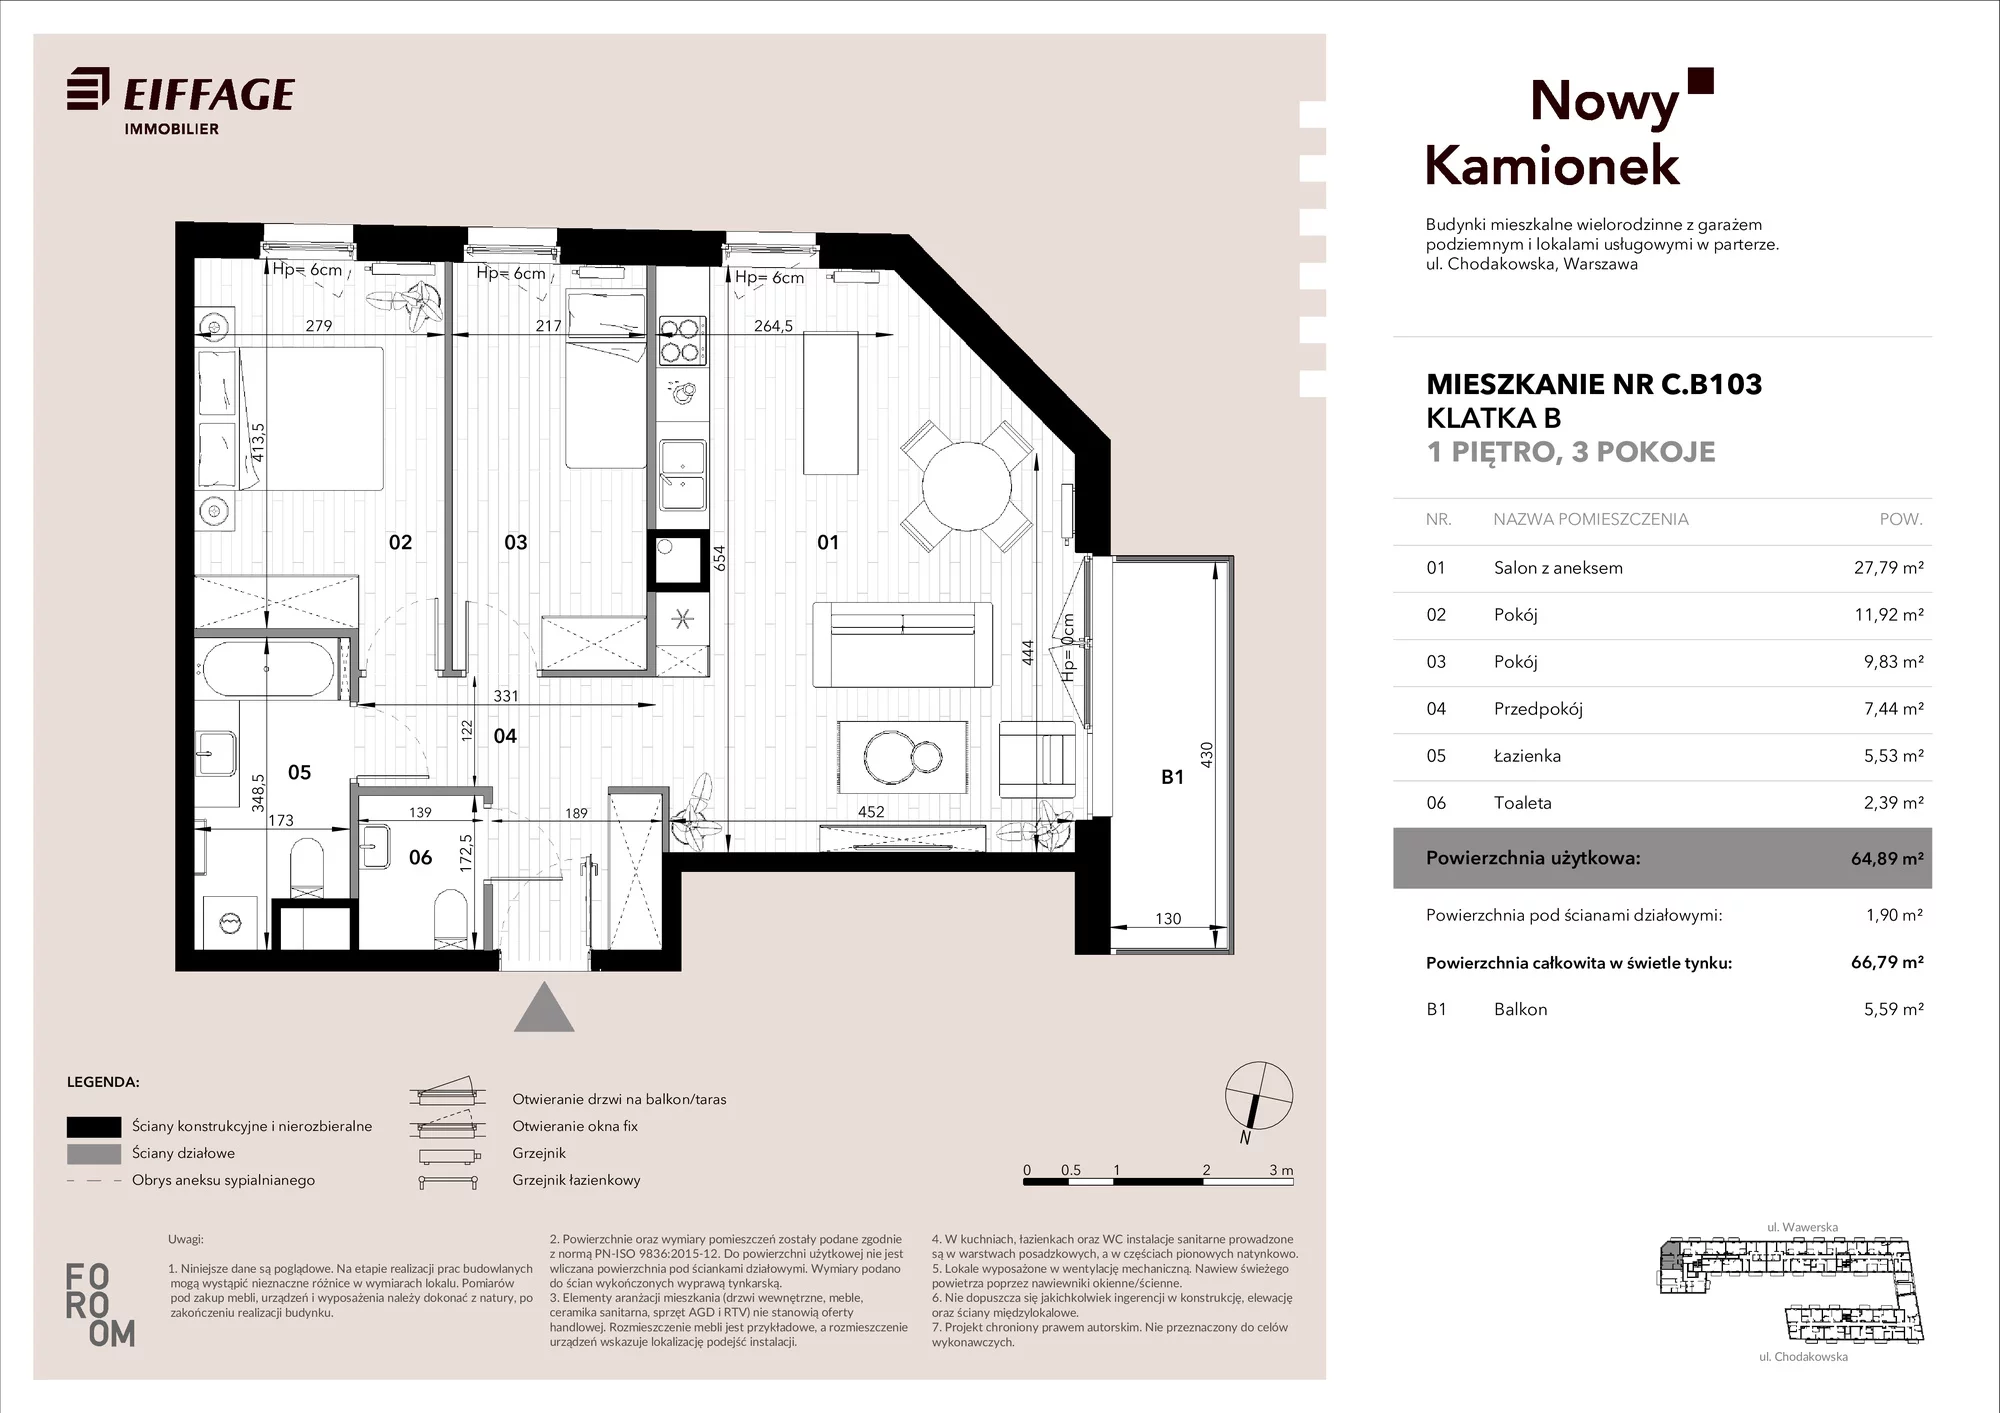 Mieszkanie 64,89 m², piętro 1, oferta nr C.B103, Nowy Kamionek, Warszawa, Praga Południe, Kamionek, ul. Chodakowska